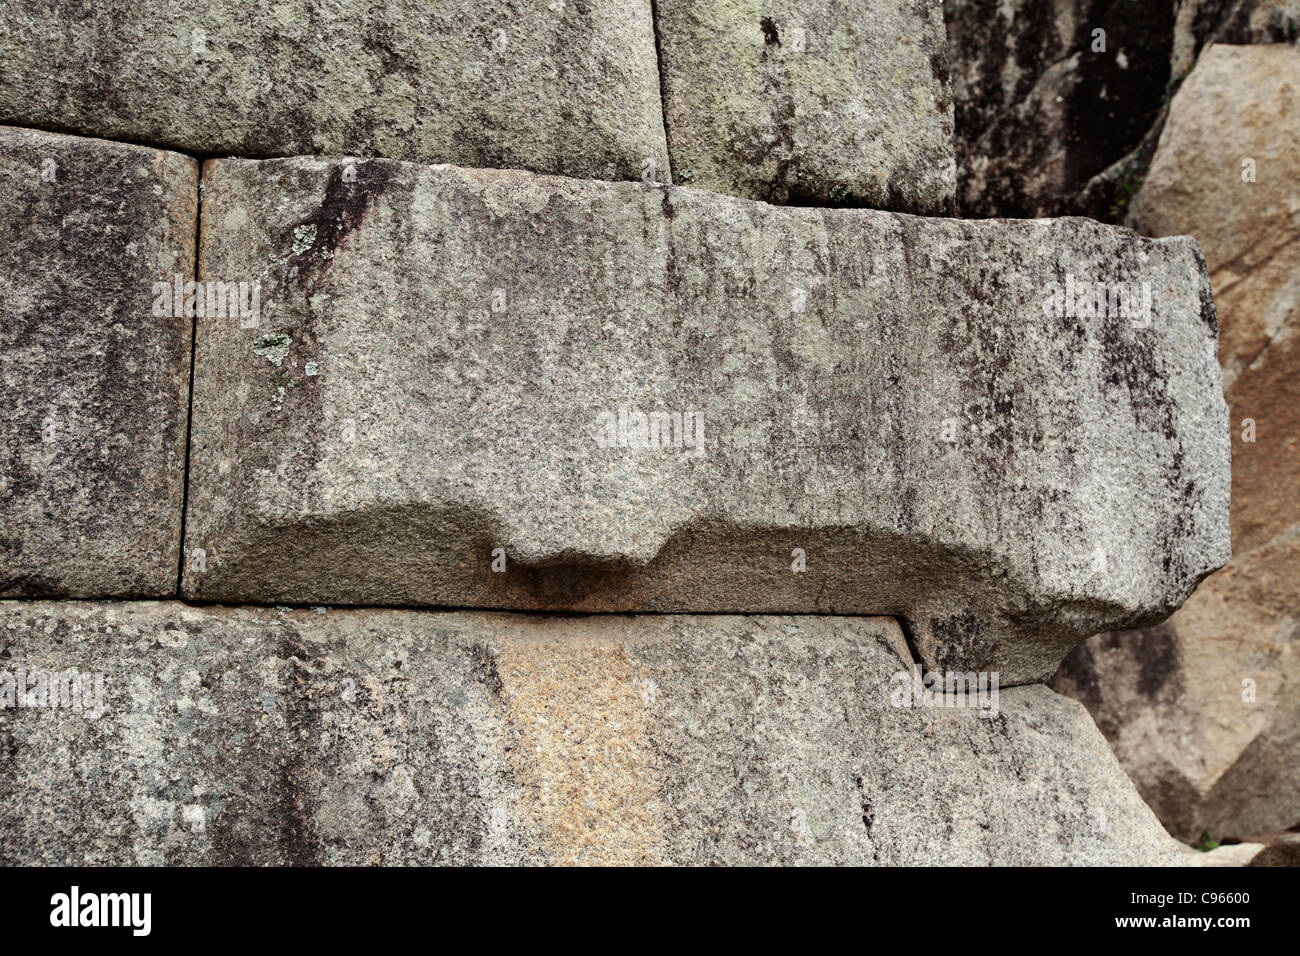 Le travail de pierre Inca à ancient ruines Incas de Machu Picchu, site touristique le plus connu dans la région de montagnes des Andes, au Pérou. Banque D'Images